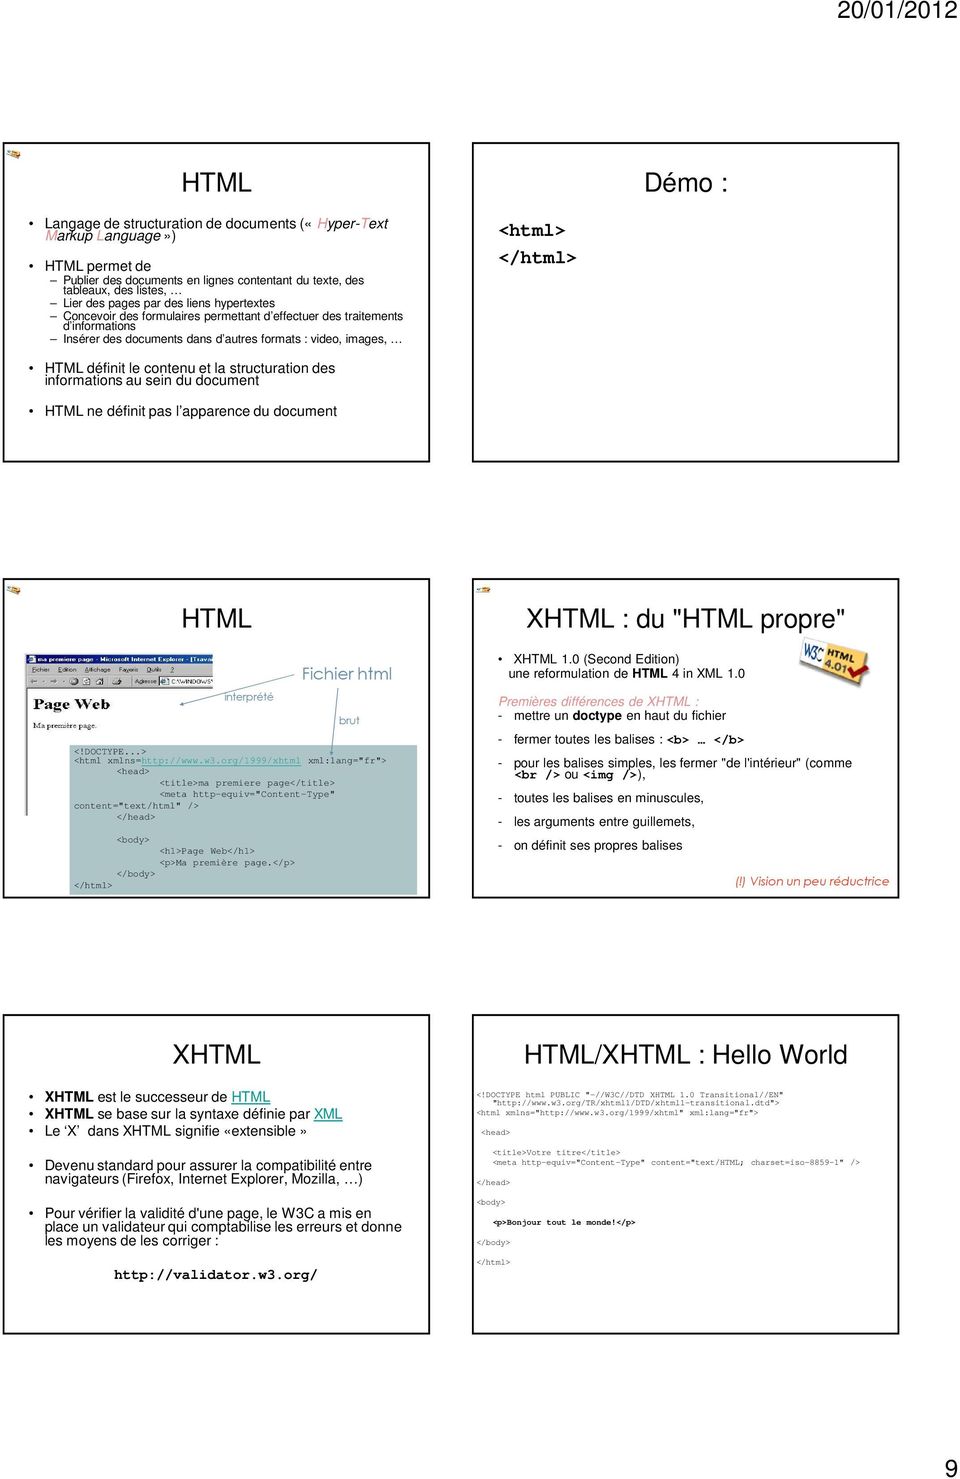 structuration des informations au sein du document HTML ne définit pas l apparence du document Exemple HTML interprété <!DOCTYPE...> <html xmlns=http://www.w3.